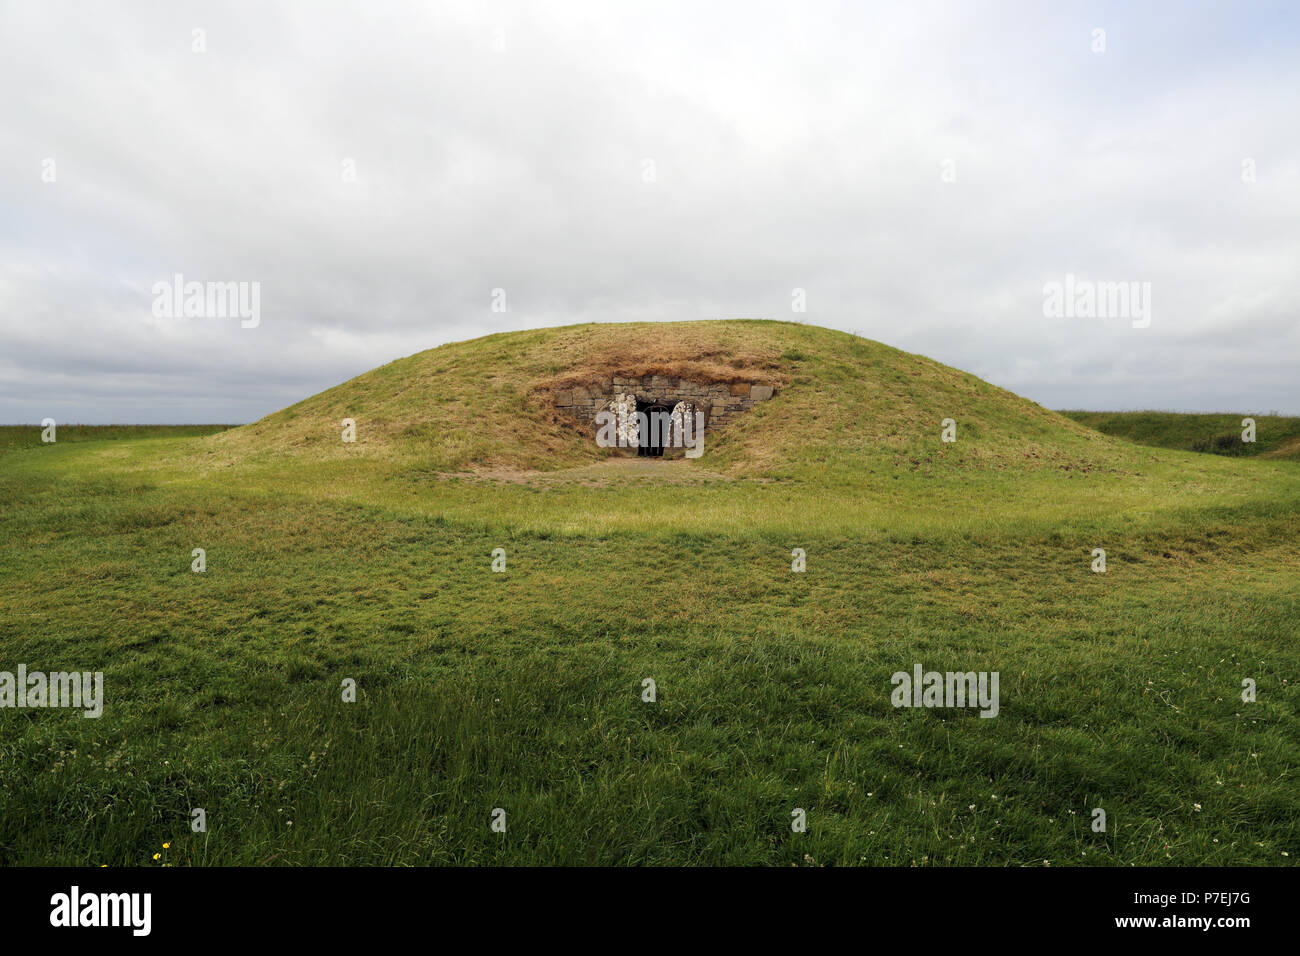 La colline de Tara, située près de la rivière Boyne, est un complexe archéologique qui s'étend entre Navan et Cill Dhéagláin dans le comté de Meath, en Irlande. Il con Banque D'Images